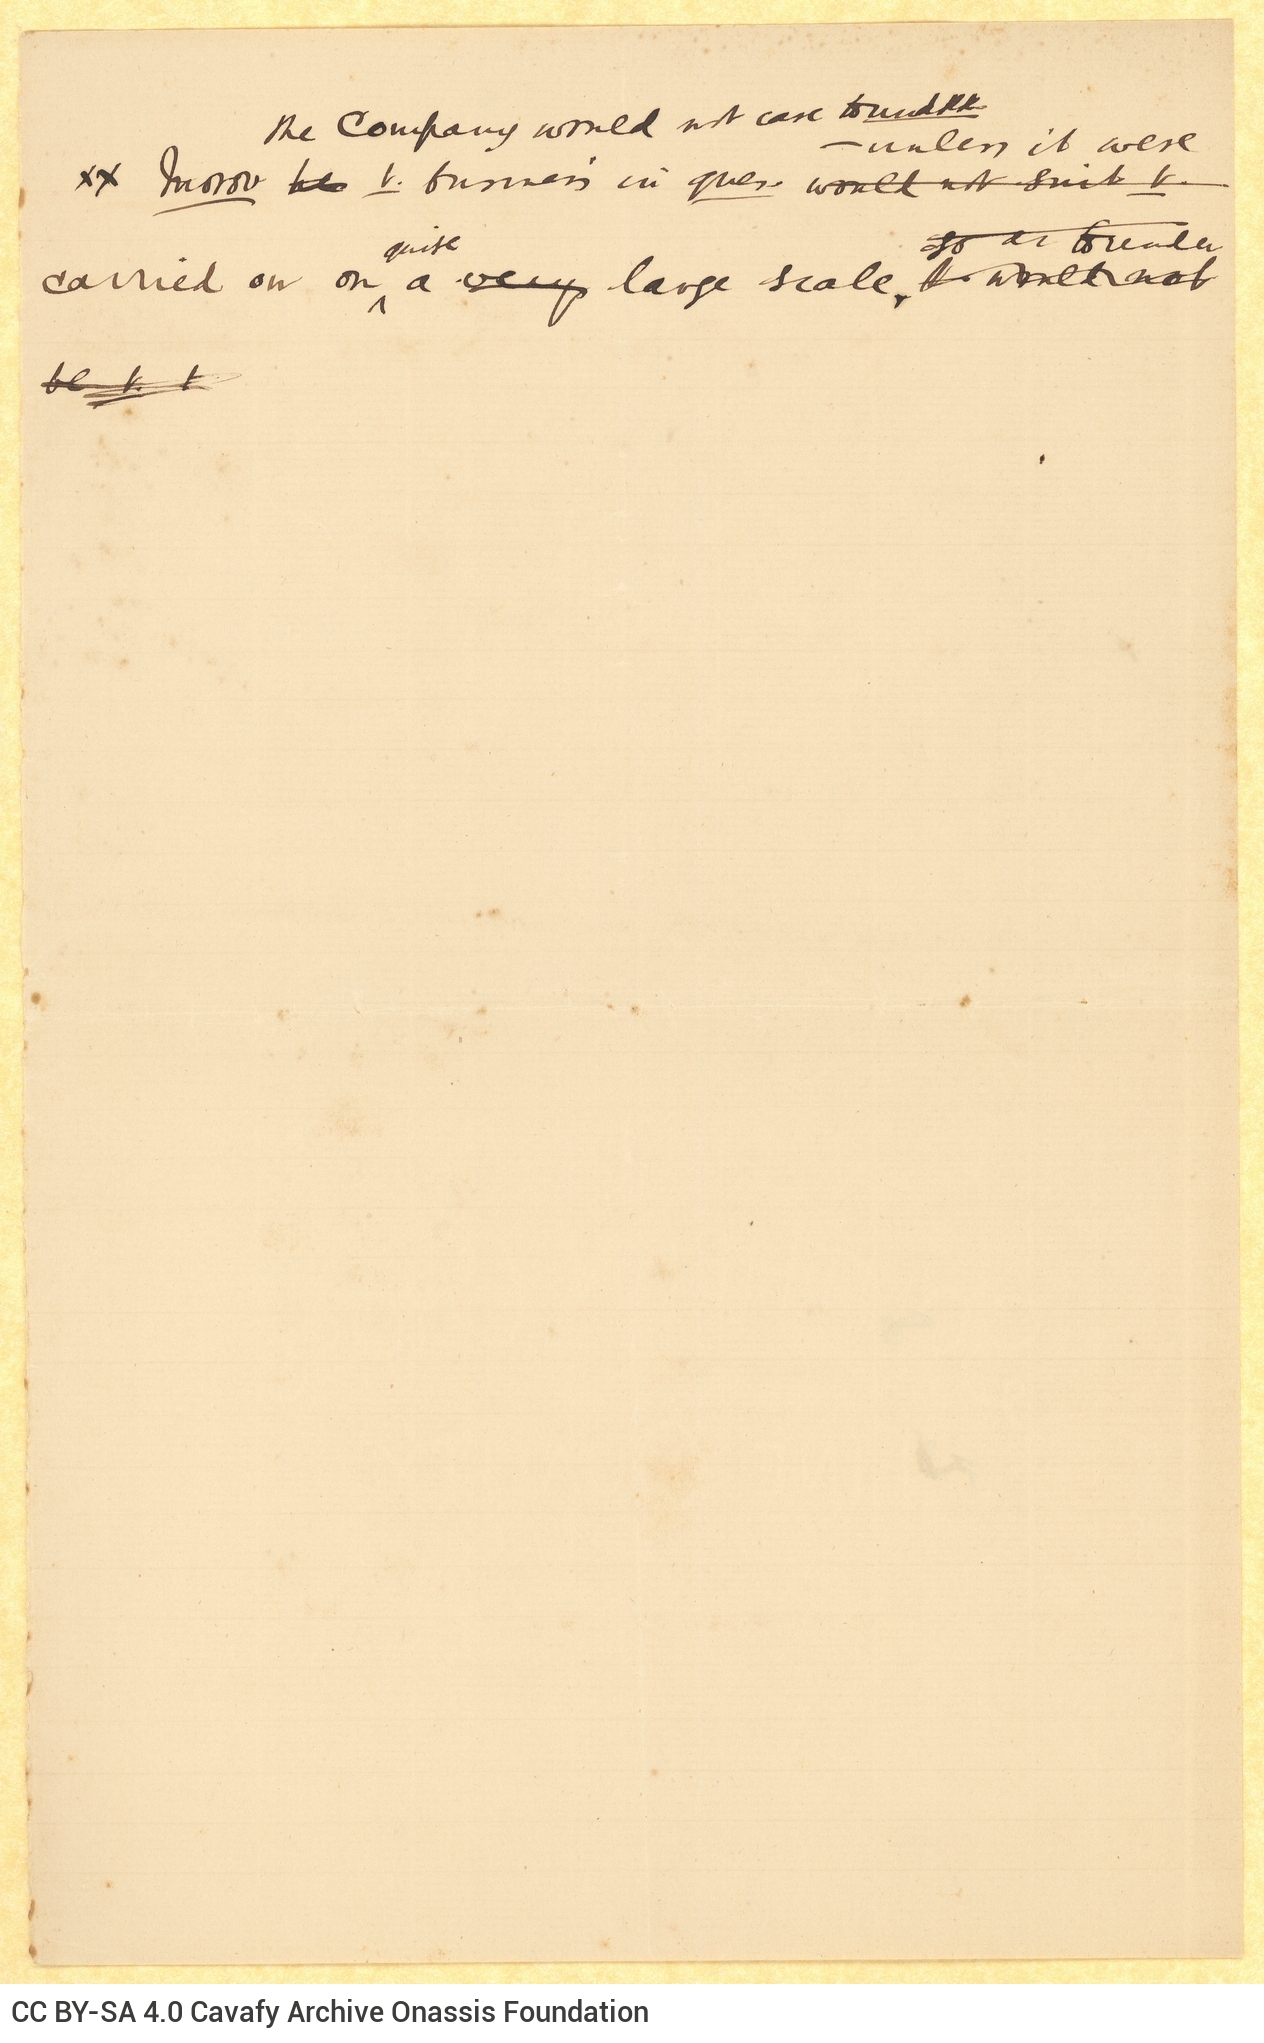 Χειρόγραφο σχέδιο επιστολής του Καβάφη προς παραλήπτη με το όνομα Azi